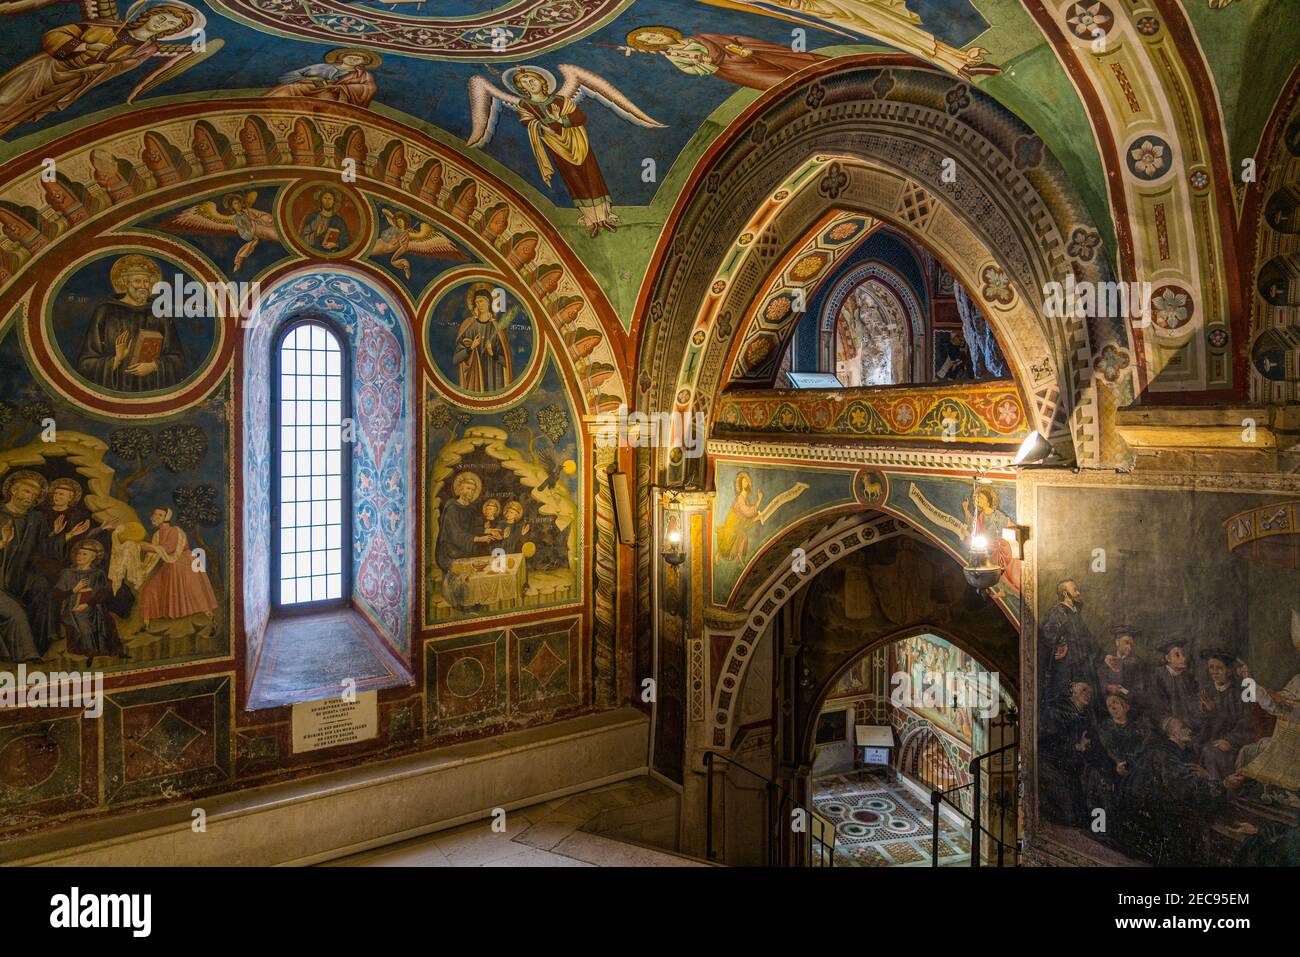 Les magnifiques fresques à l'intérieur du monastère de la grotte Sacrée (Sacro Speco) de Saint Benoît à Subiaco, province de Rome, Latium, Italie. Banque D'Images